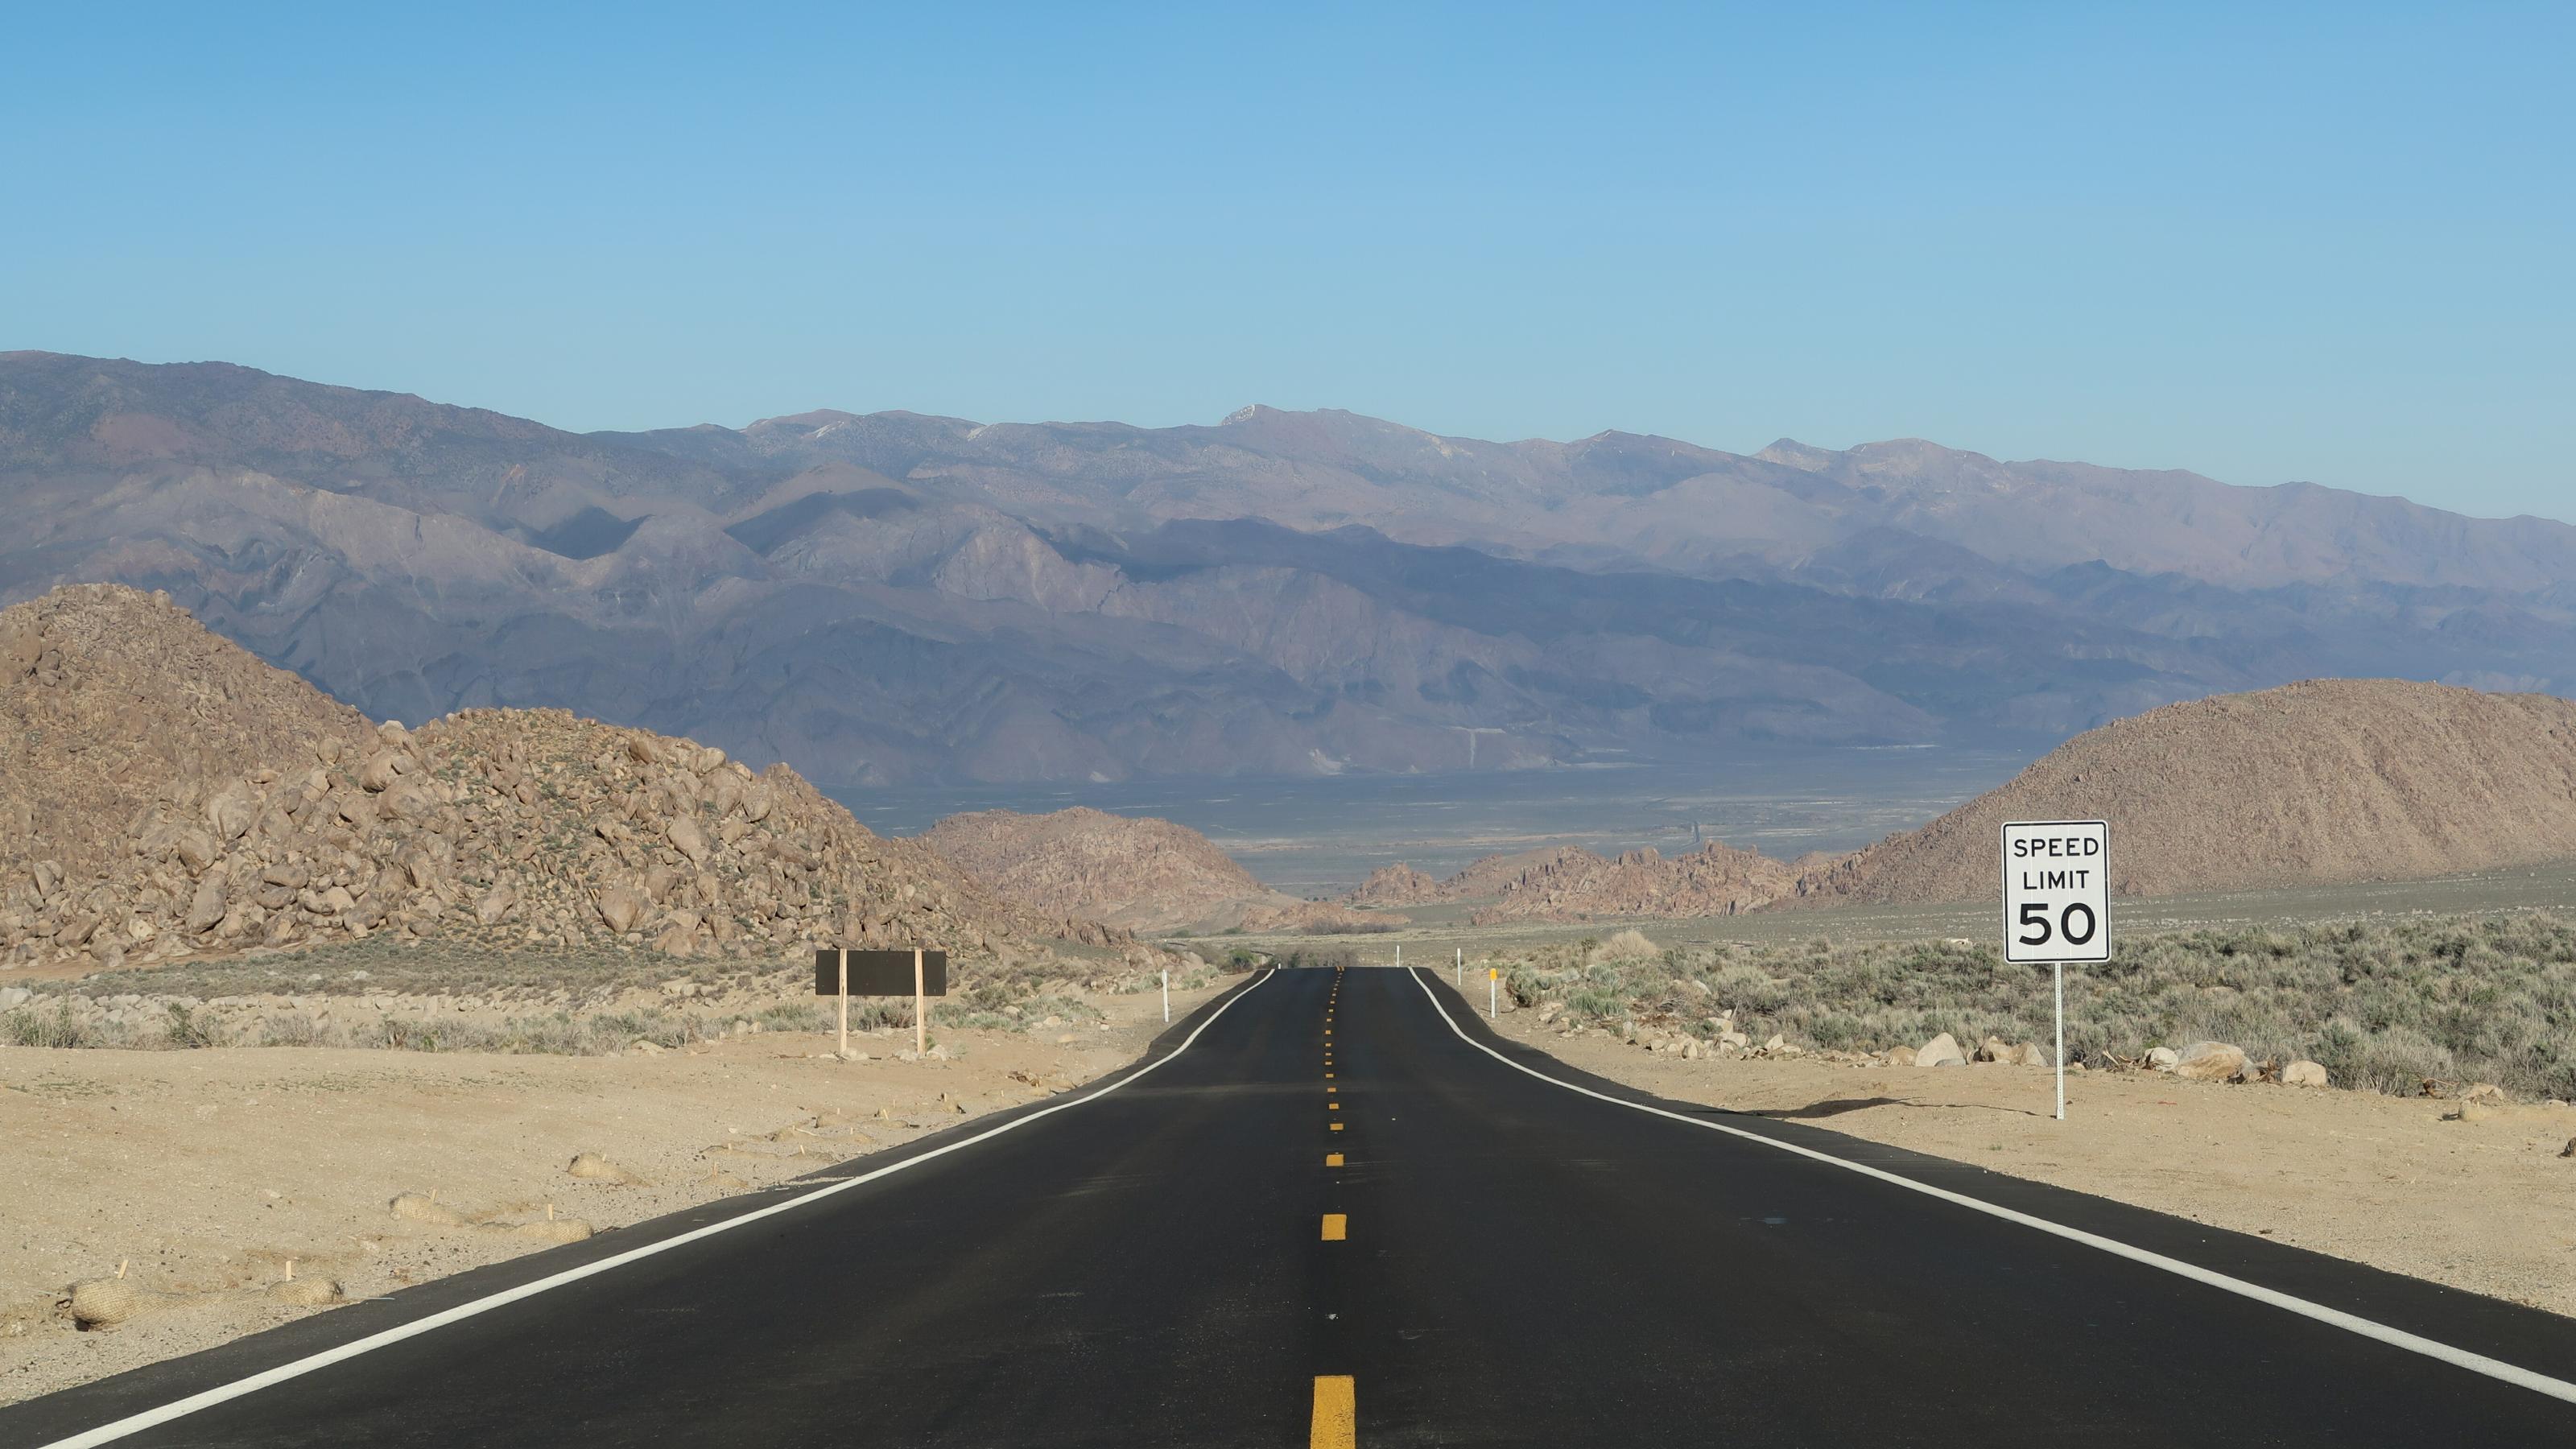 Das Bild zeigt eine leere Straße, die in die Ferne führt. Neben der Straße liegt eine Wüste, in der Ferne sind Berge zu sehen.